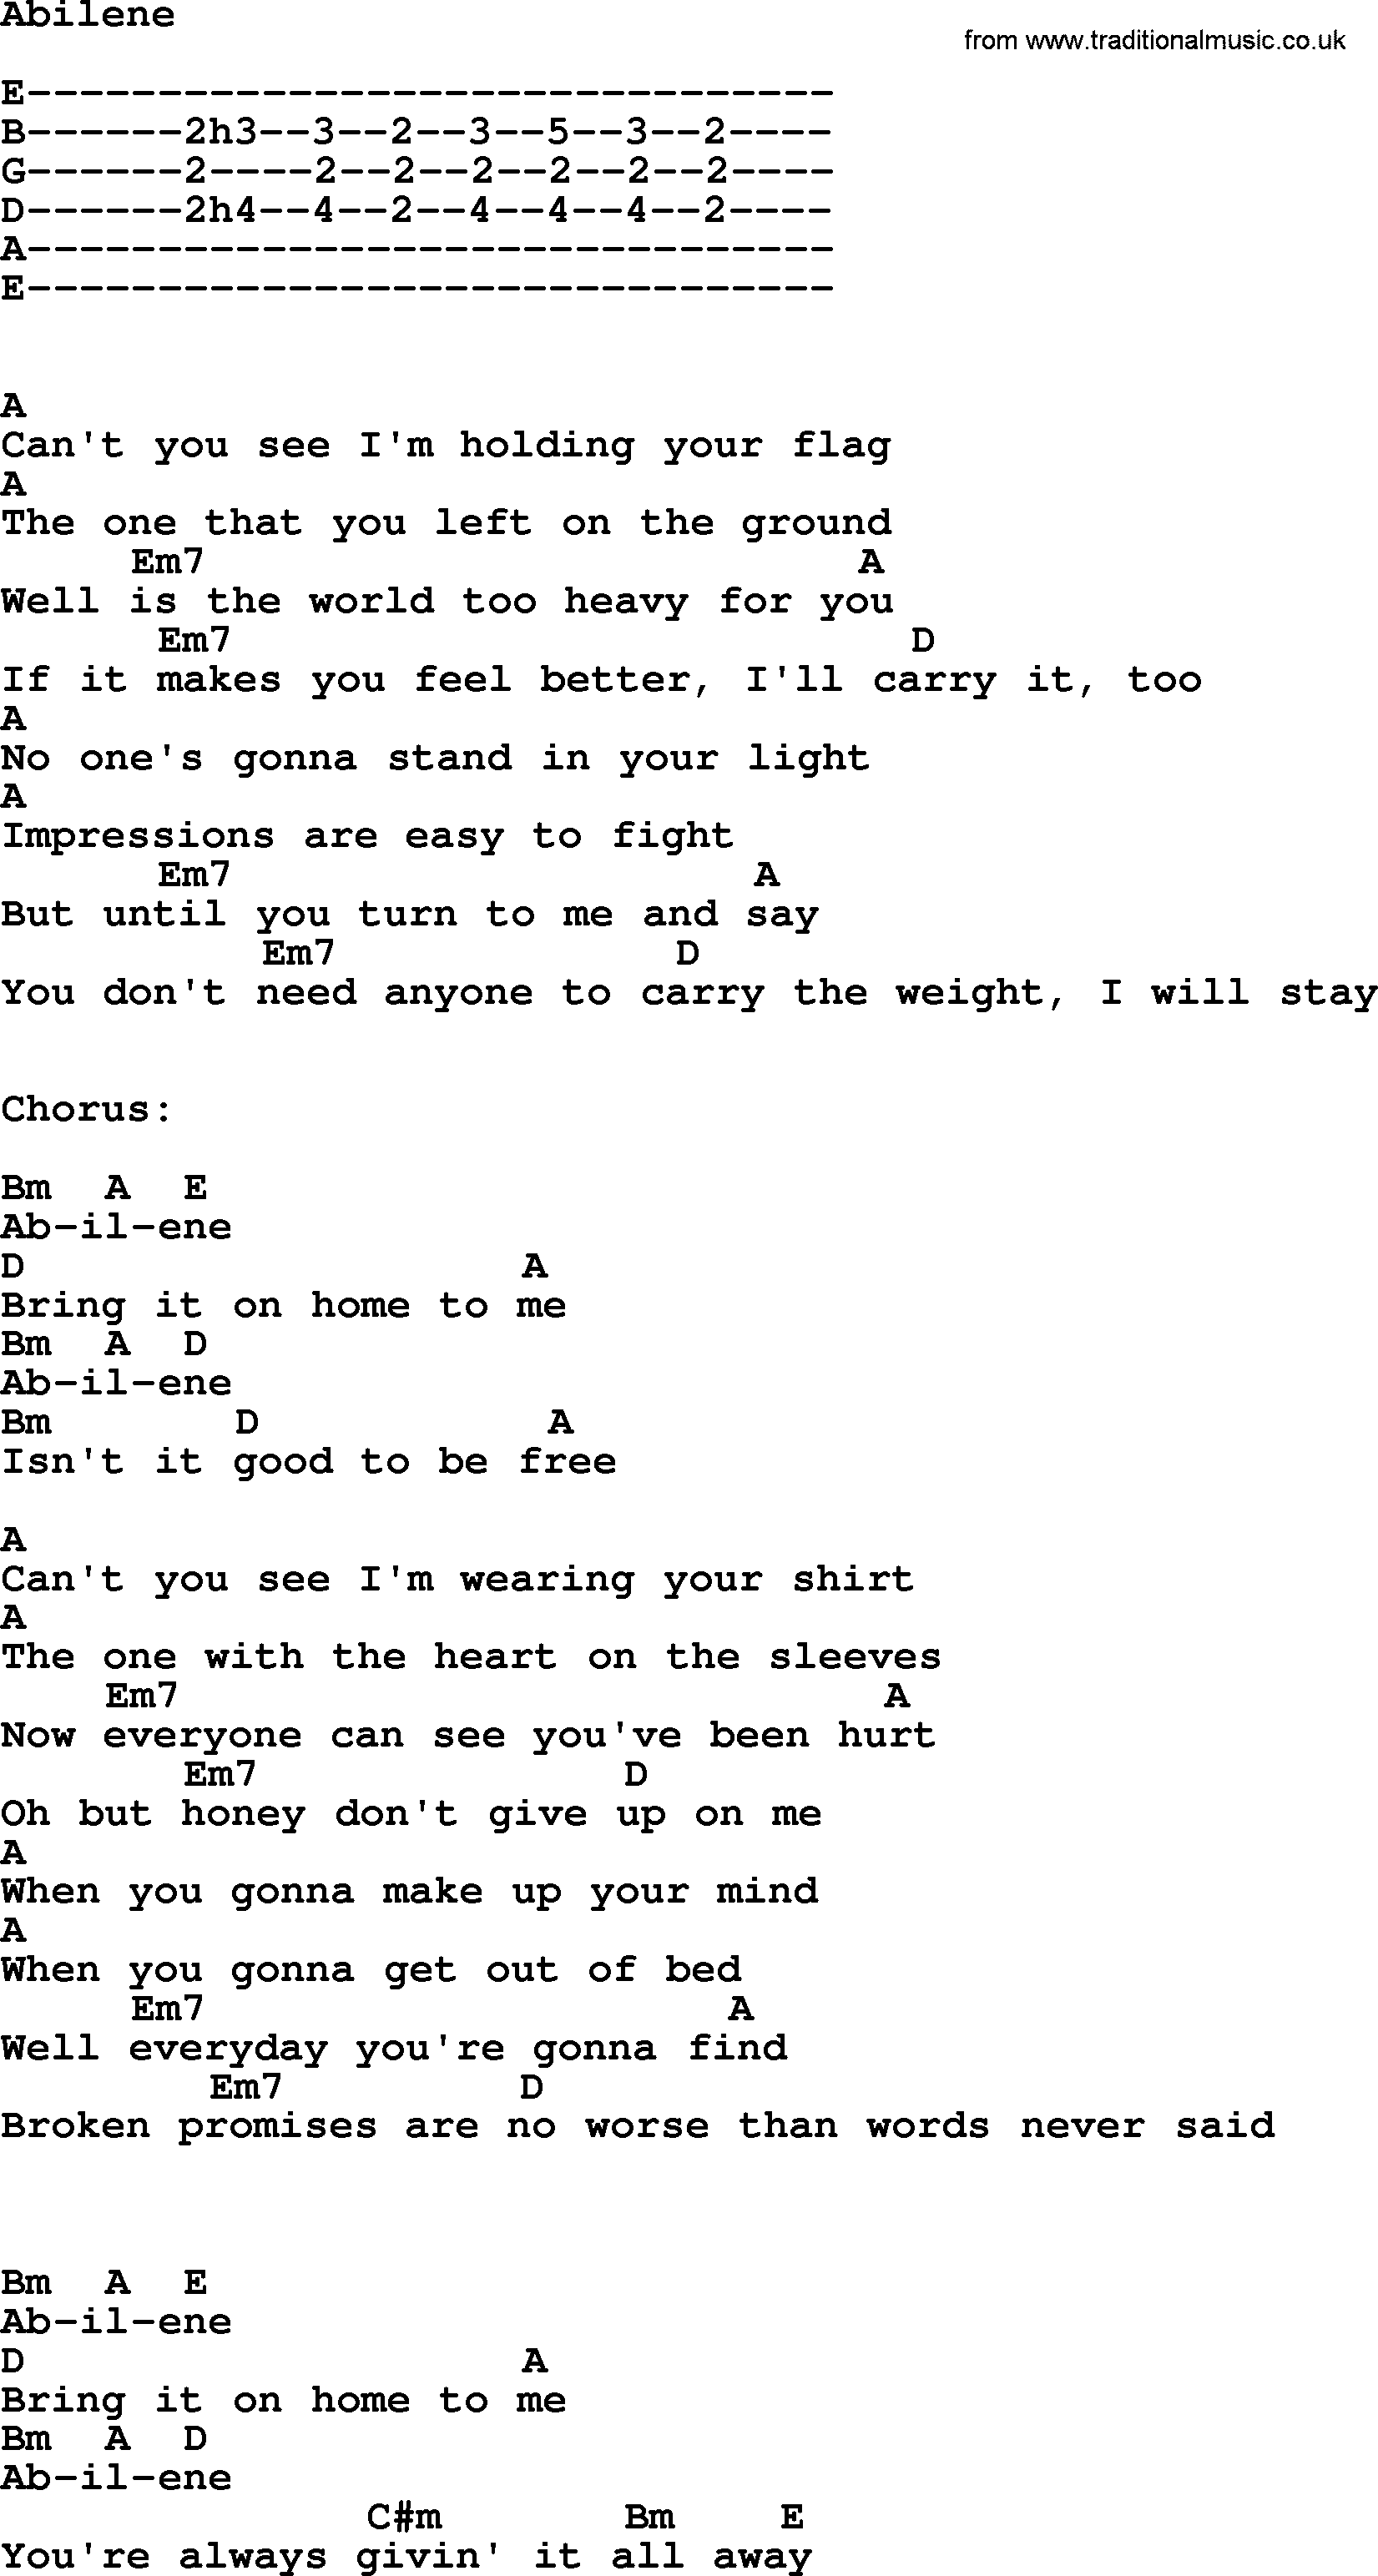 Willie Nelson song: Abilene, lyrics and chords